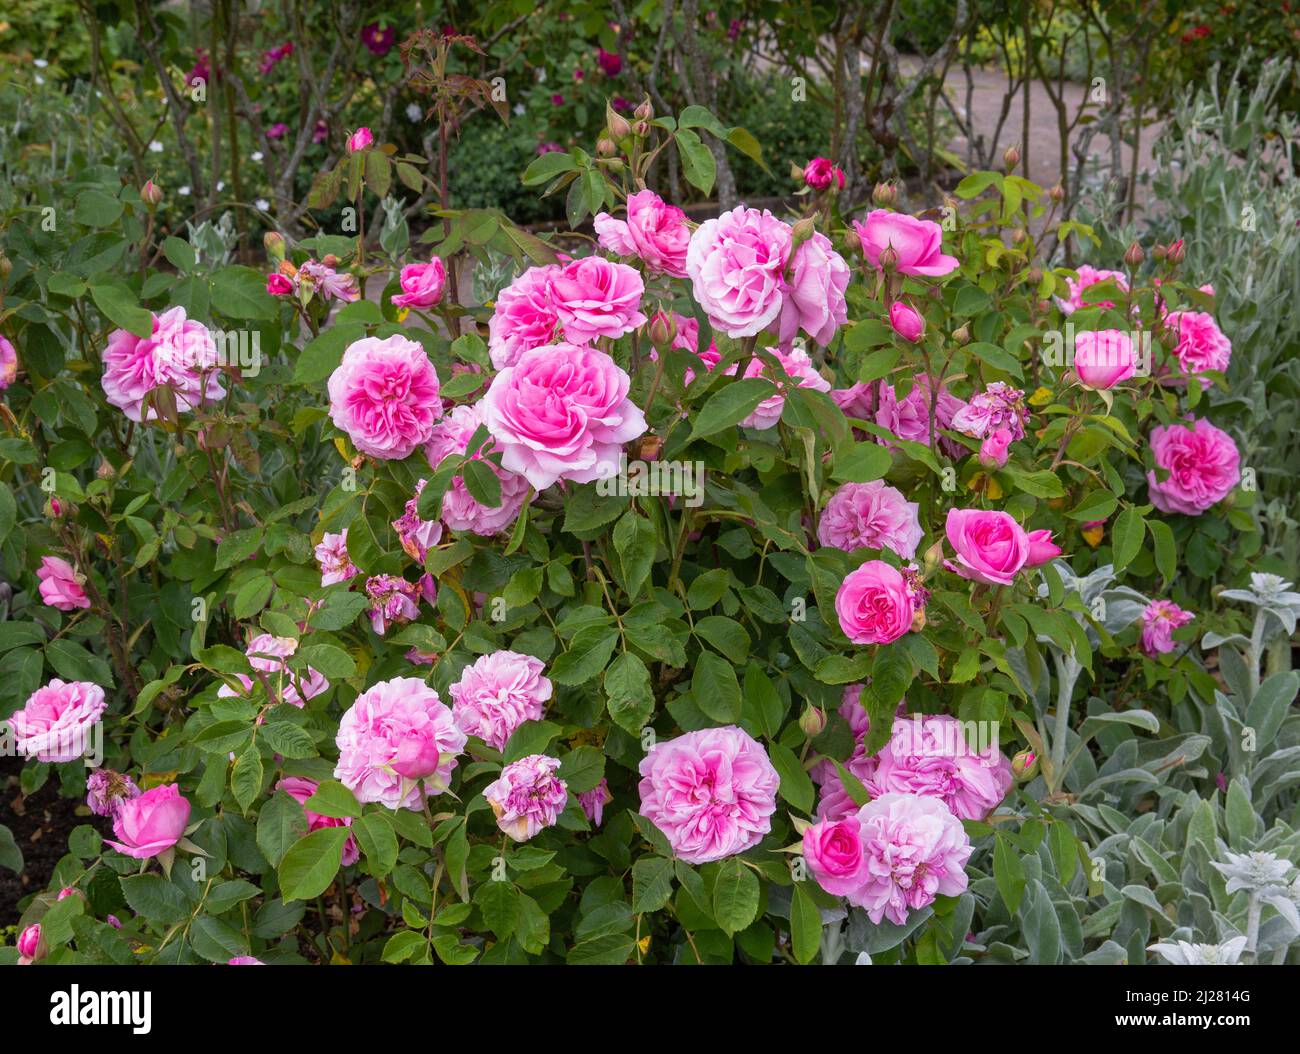 rosa gertrude jekyll ausbord un pequeño arbusto erguido con flores dobles de color rosa intenso y fragante Foto de stock